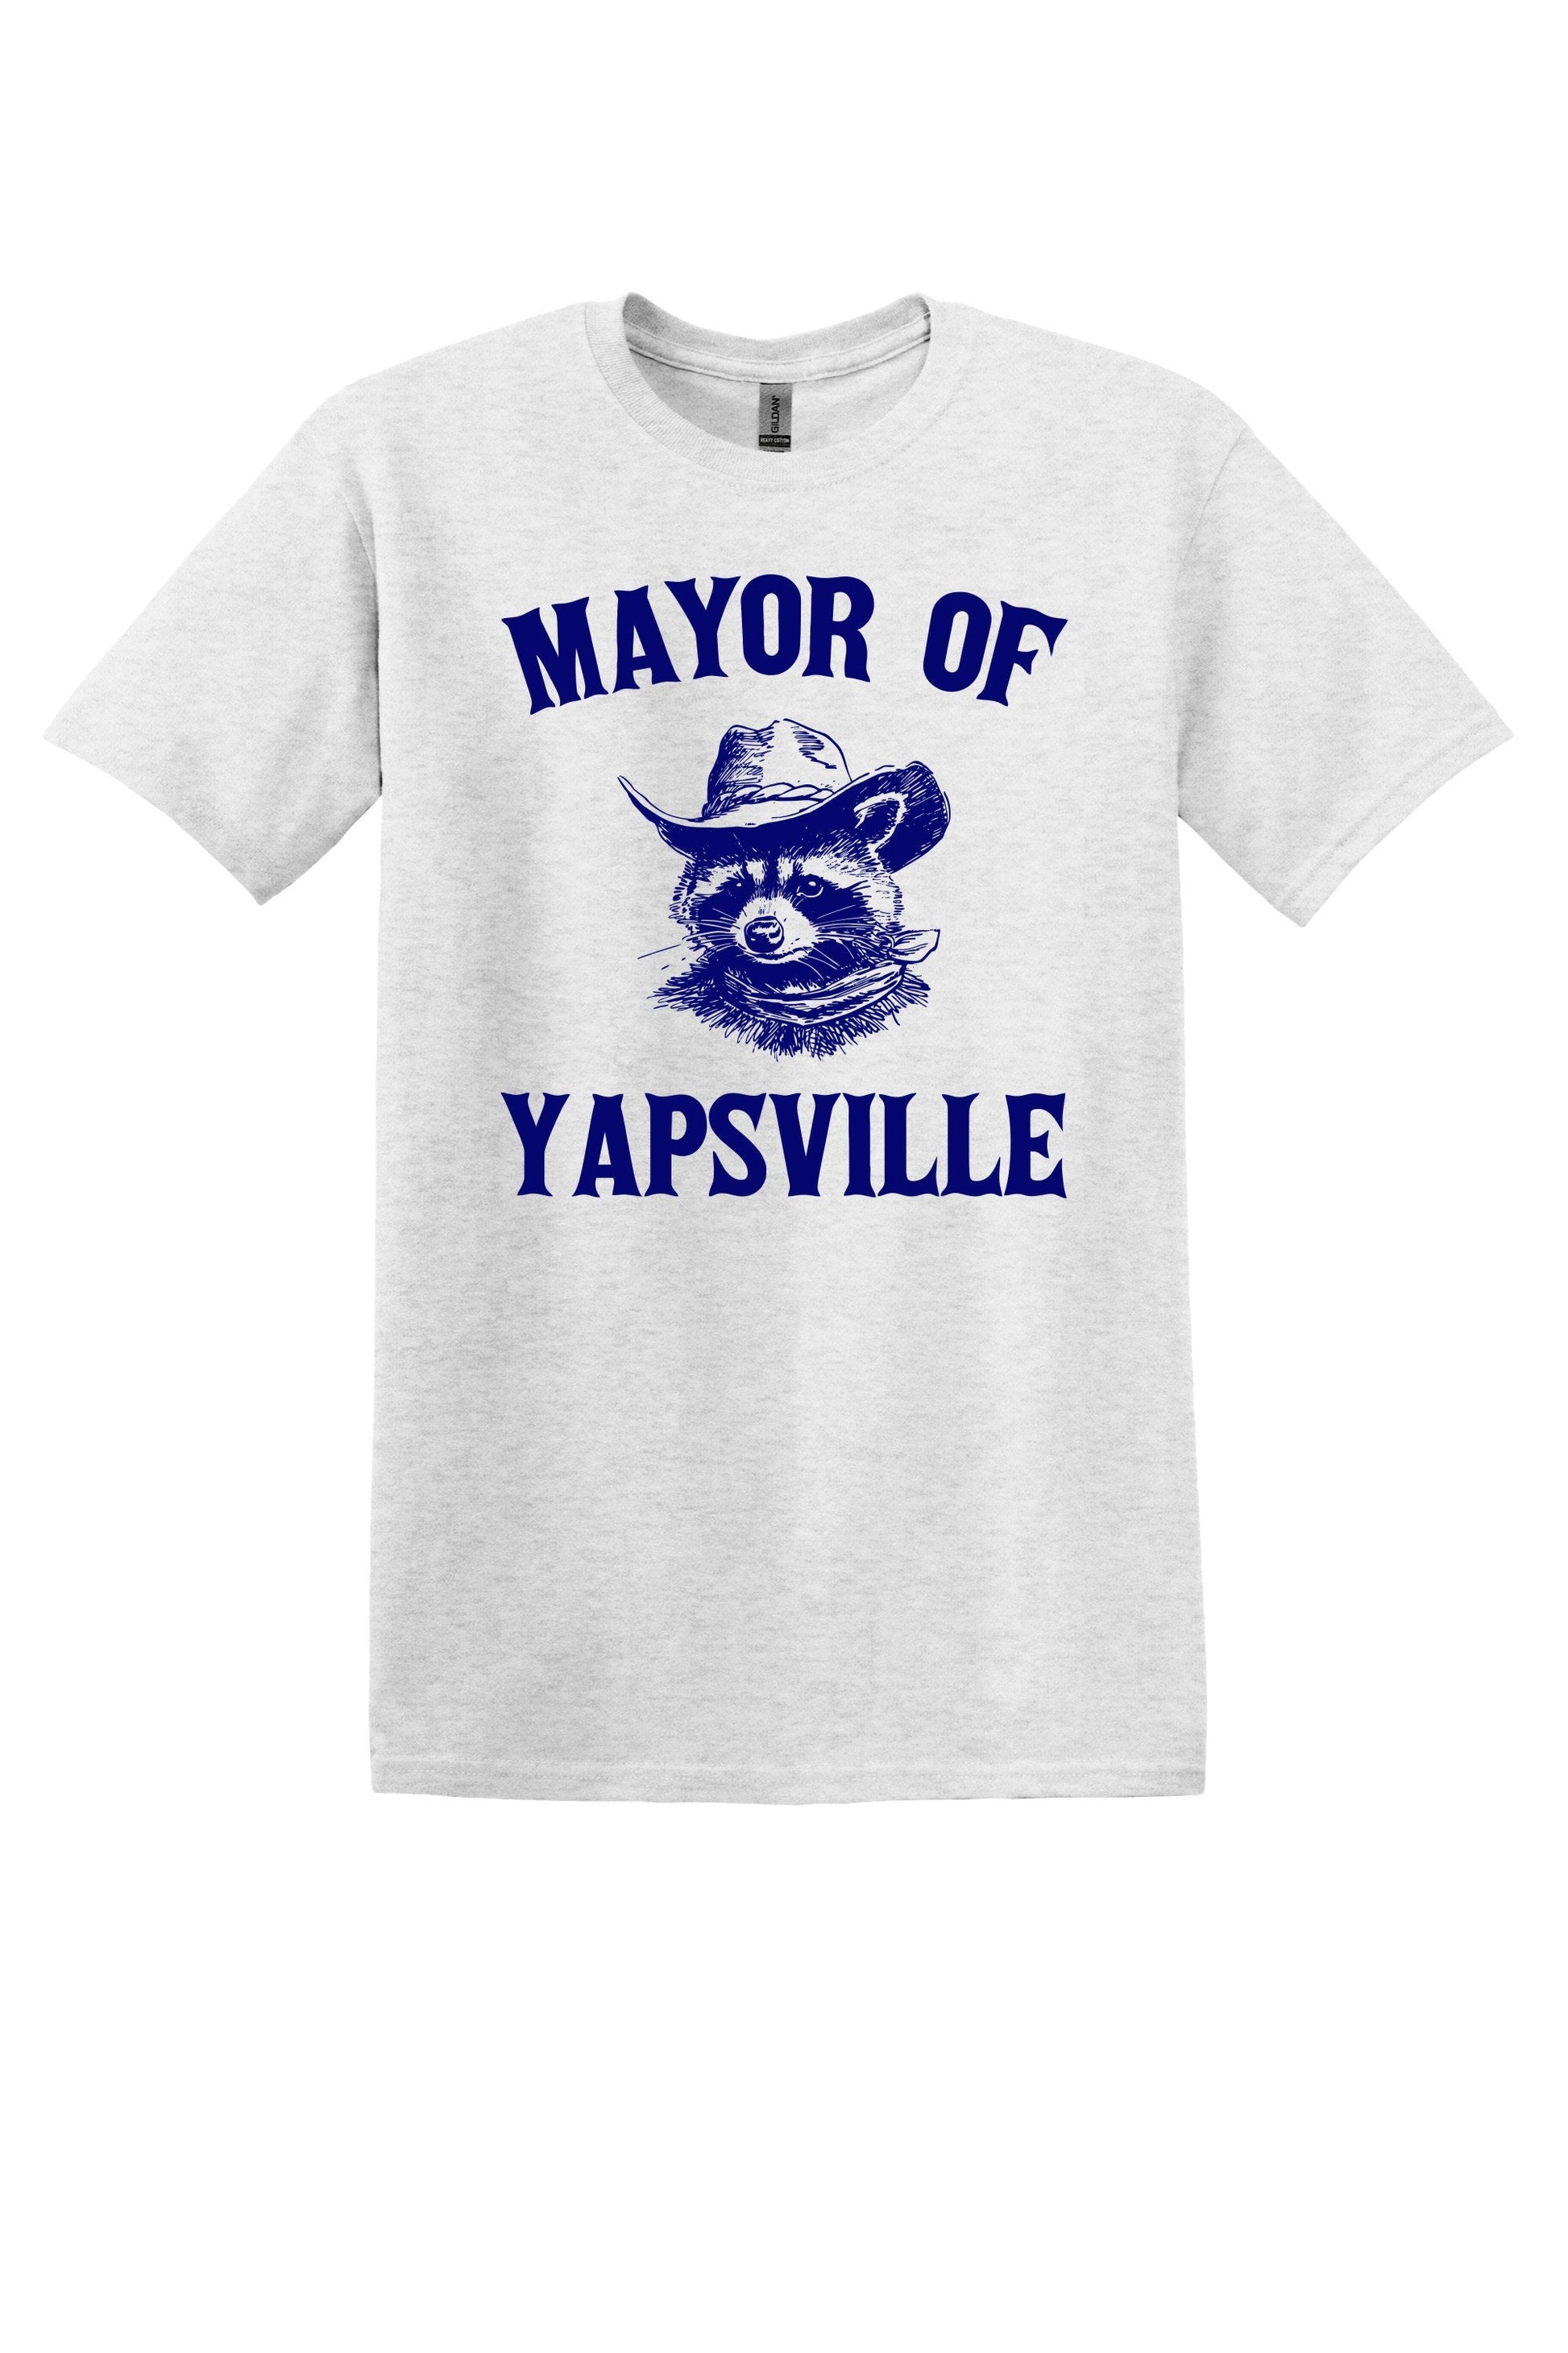 Mayor of Yapsville Graphic Tee - Fun Gift Idea!